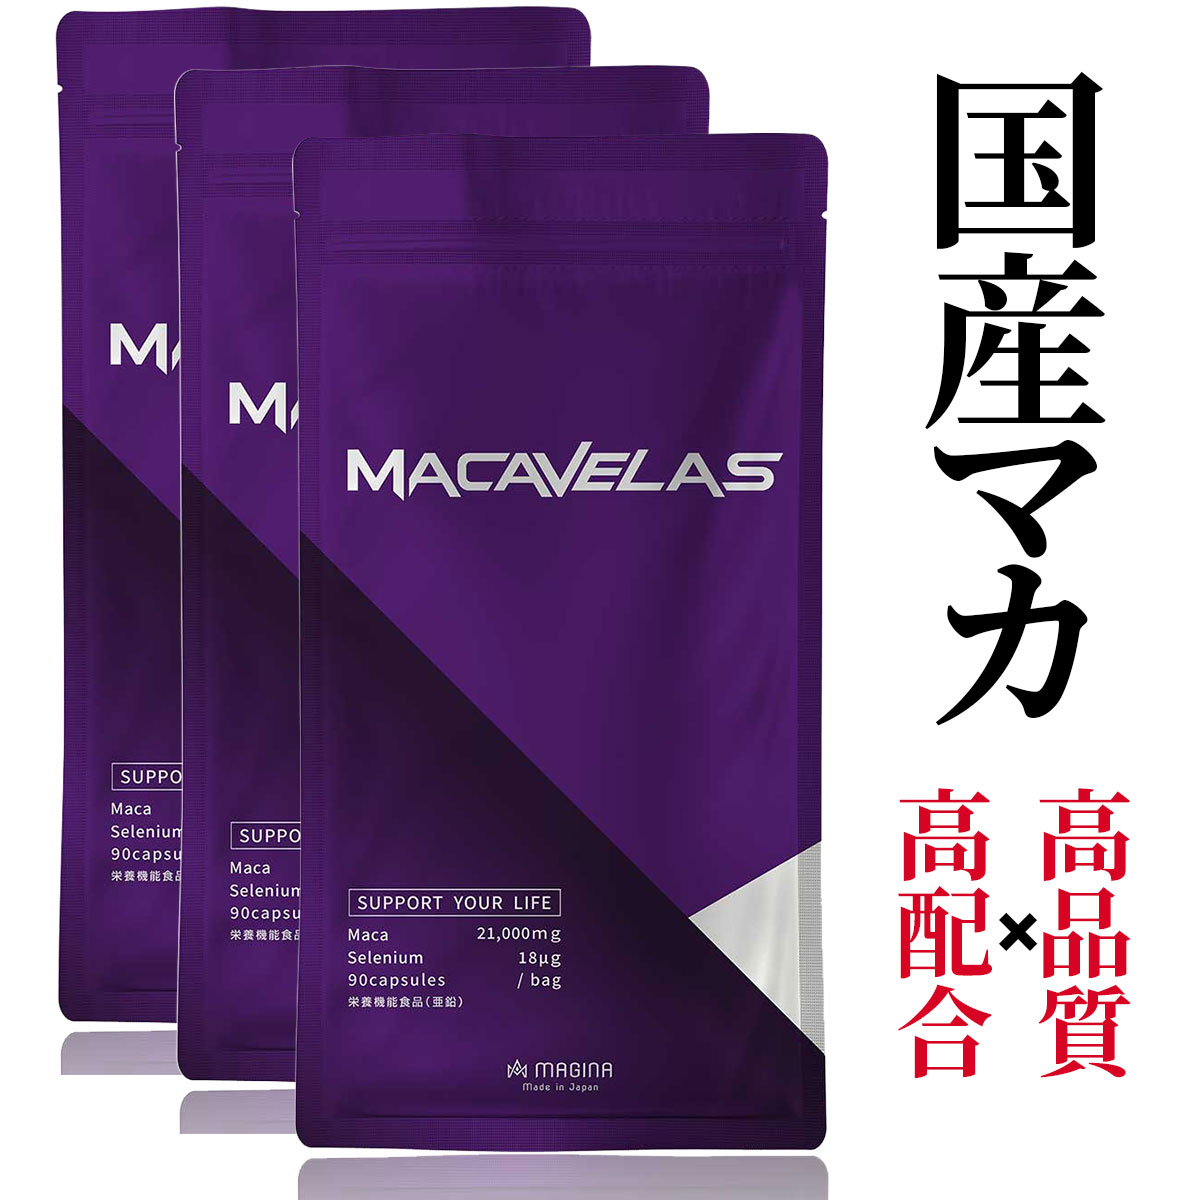 新作 大人気 マカ 亜鉛 すっぽん サプリメント MACAVELAS マカベラス 3袋 シトルリン アルギニン カンカ トンカットアリ